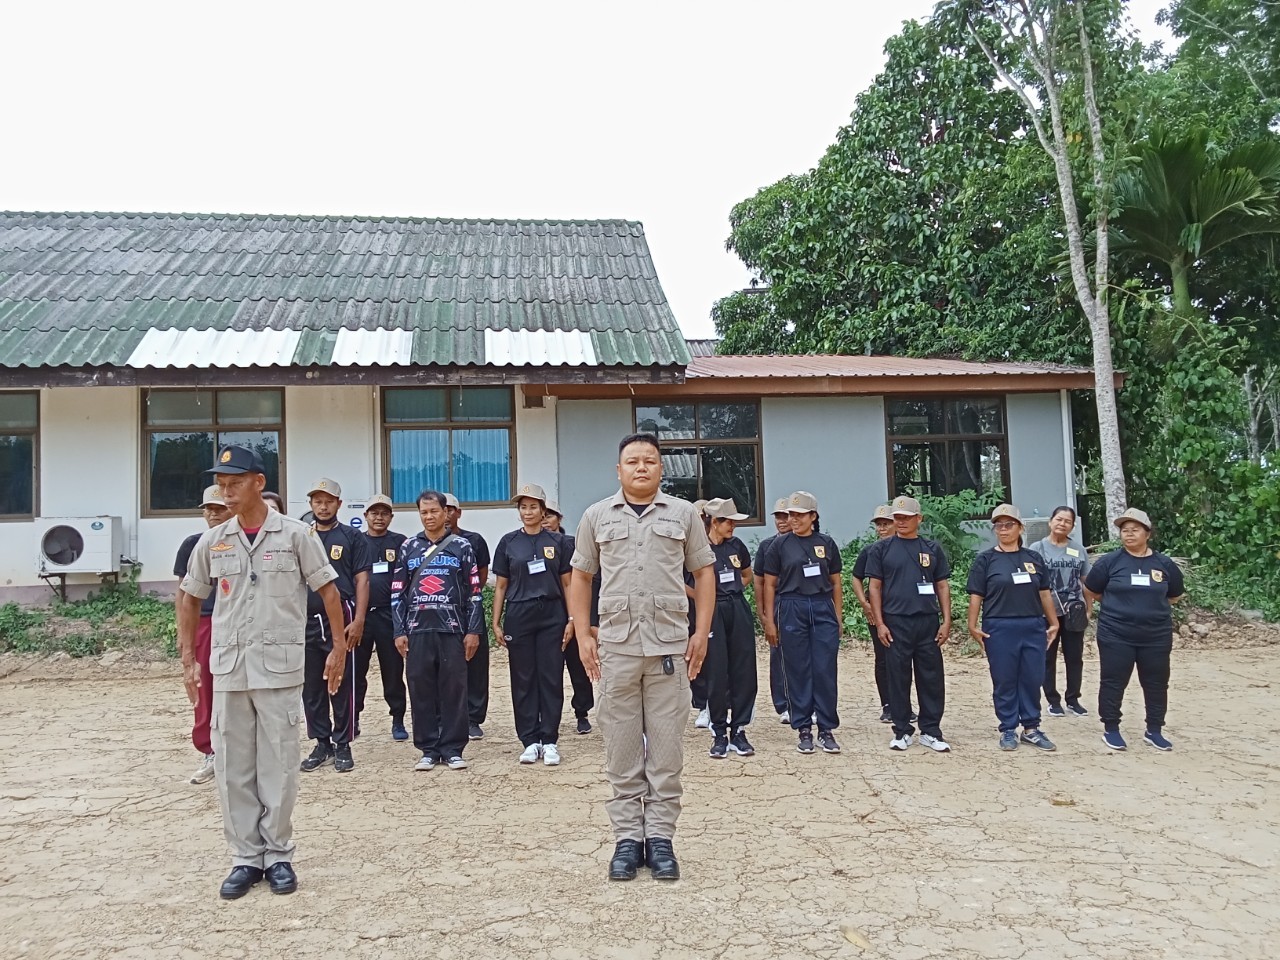 องค์การบริหารส่วนตำบลปันแต จัดกิจกรรมโครงการฝึกอบรมอาสาสมัครป้องกันฝ่ายพลเรือน (อปพร.) ประจำปี 2567 ในระหว่างวันที่ 17 - 21 มิถุนายน 2567  ณ  ห้องประชุมองค์การบริหารส่วนตำบลปันแต